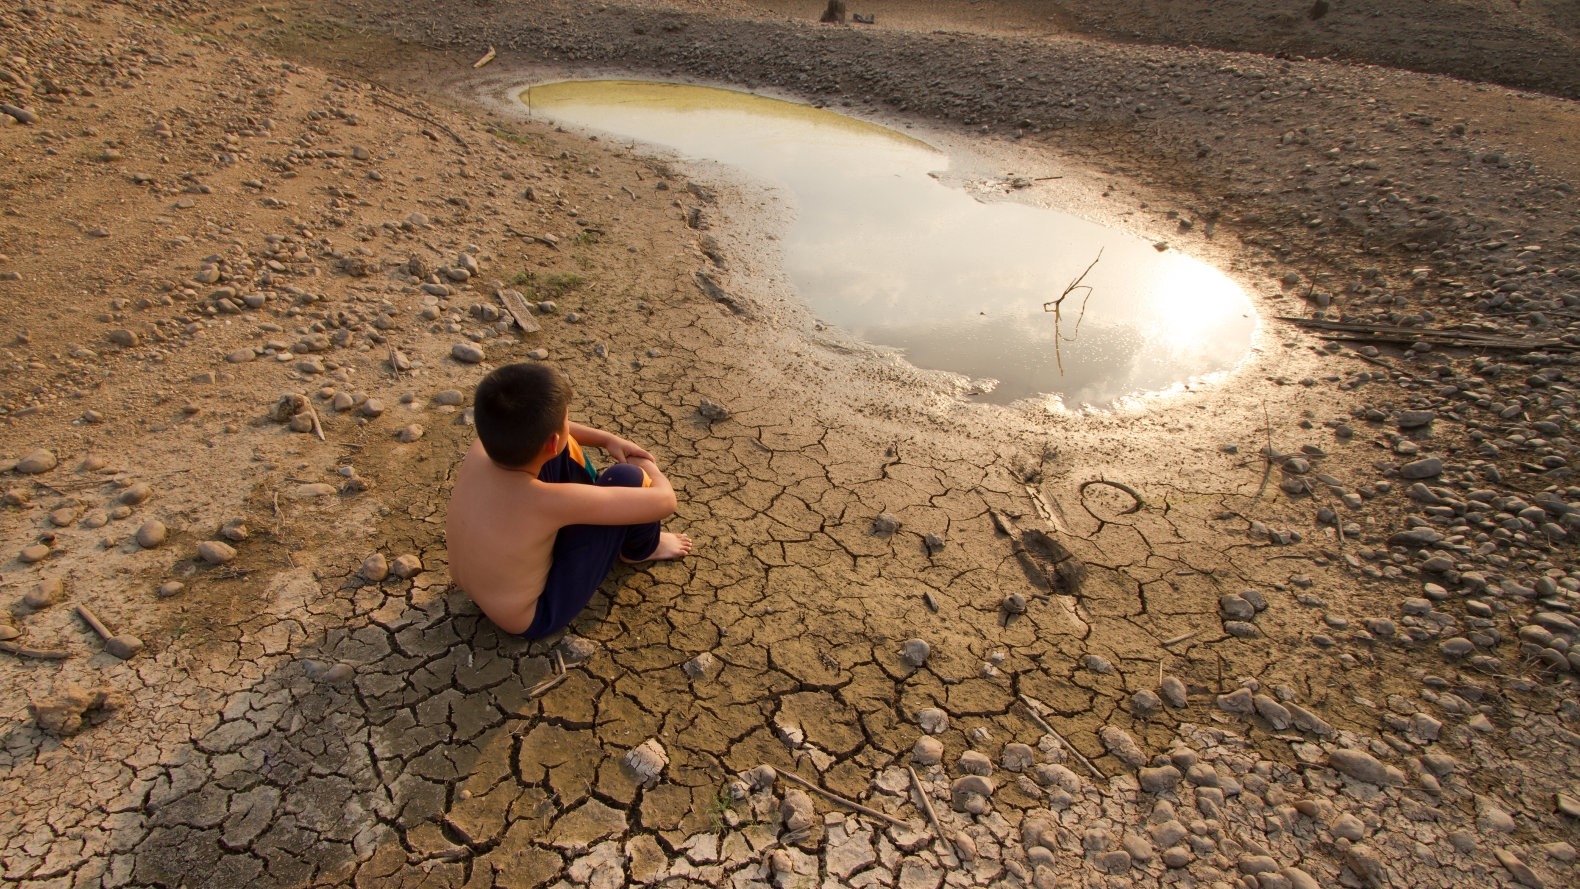 Bis zum Jahr 2050 die Hälfte der Bevölkerung der Erde bleiben kann, ohne Frischwasser